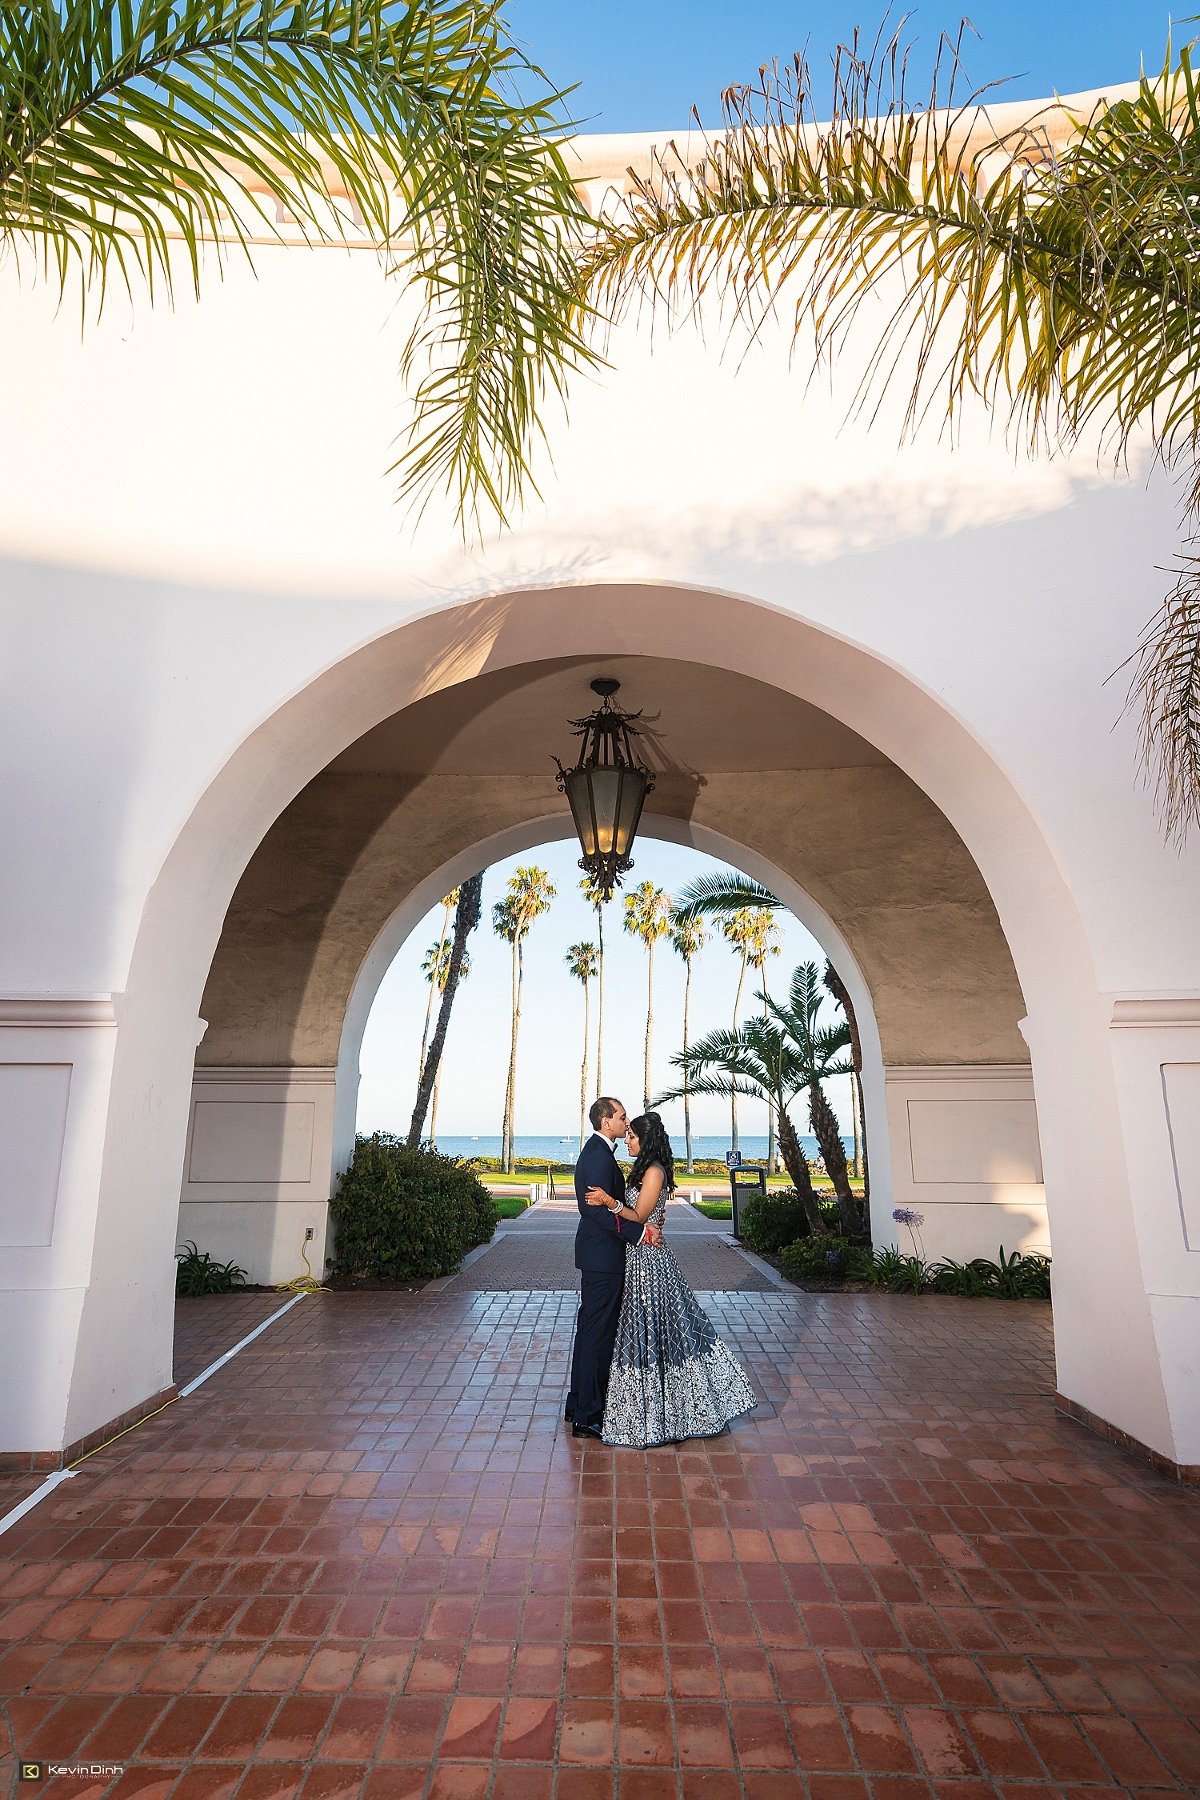 Indian bride and groom at Hilton Santa Barbara